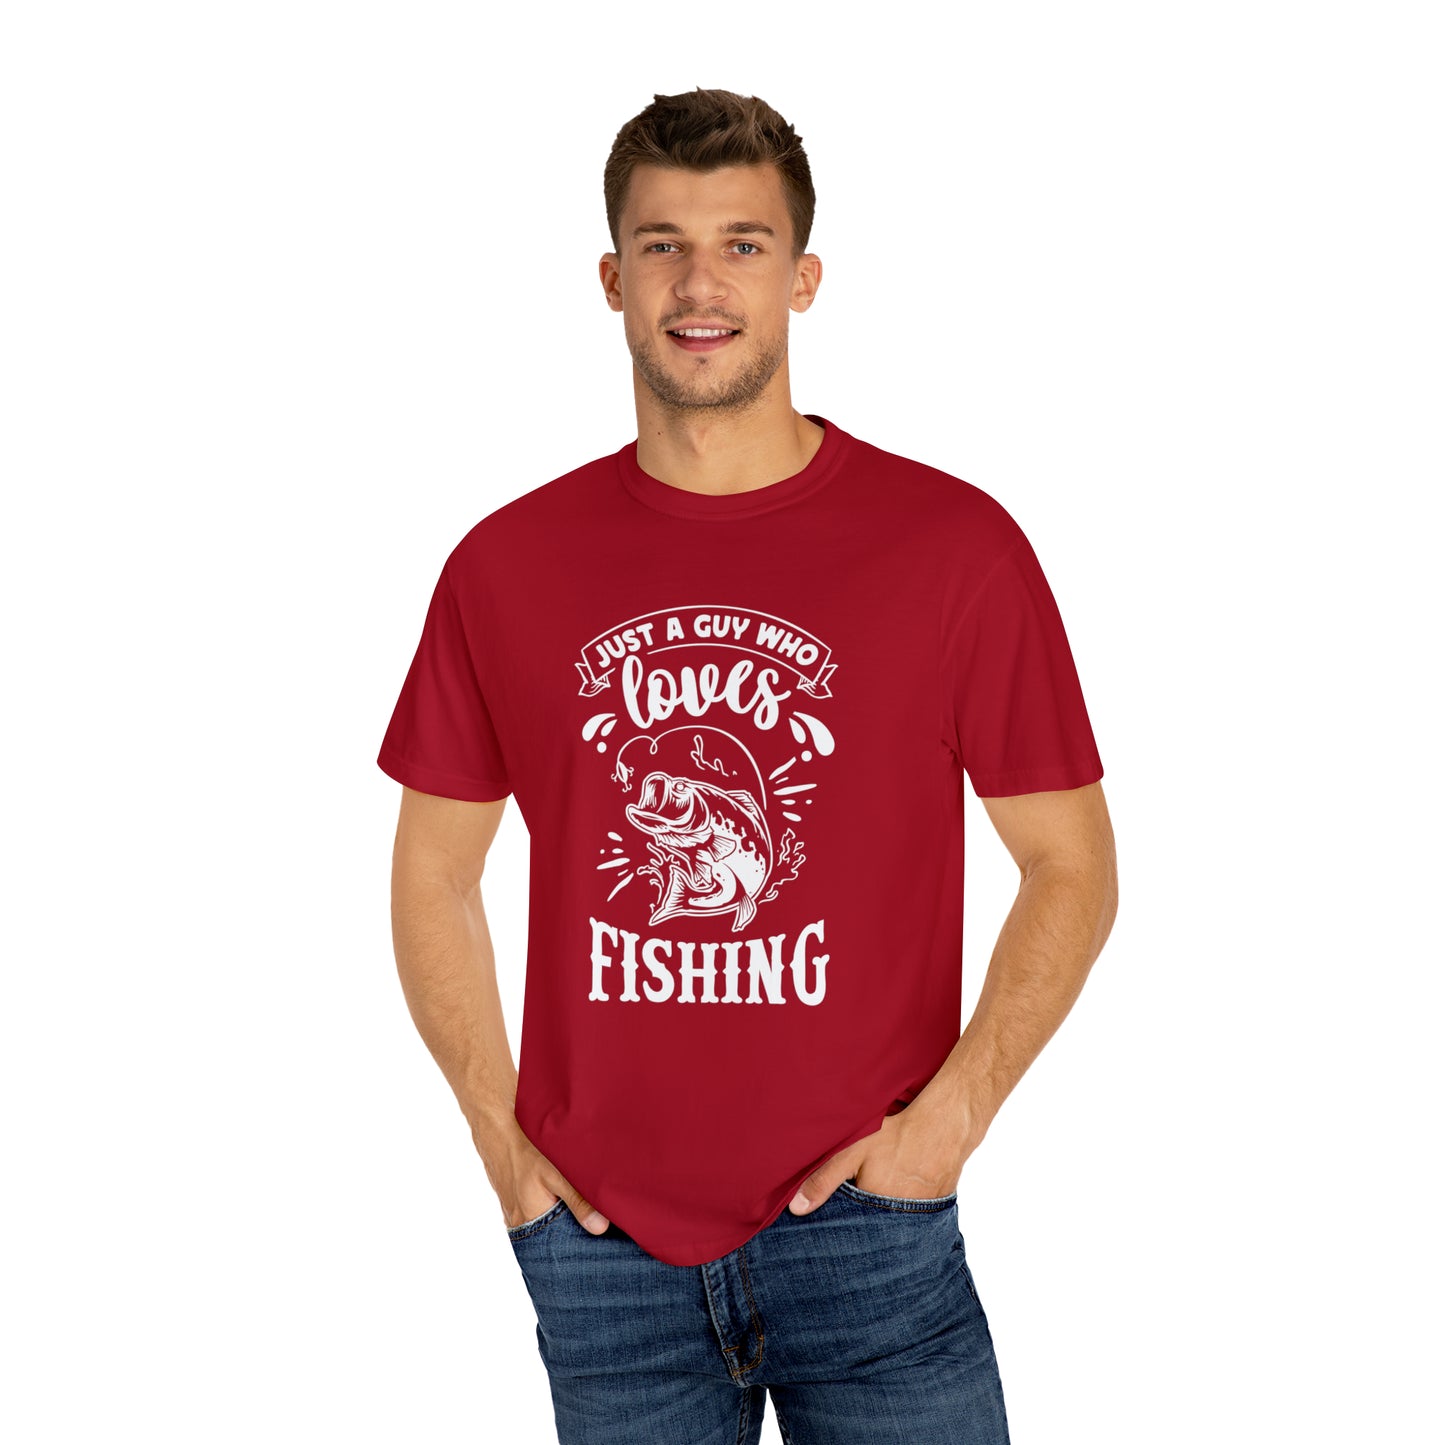 Pescador apasionado: expresa tu amor por la pesca con estilo - Camiseta